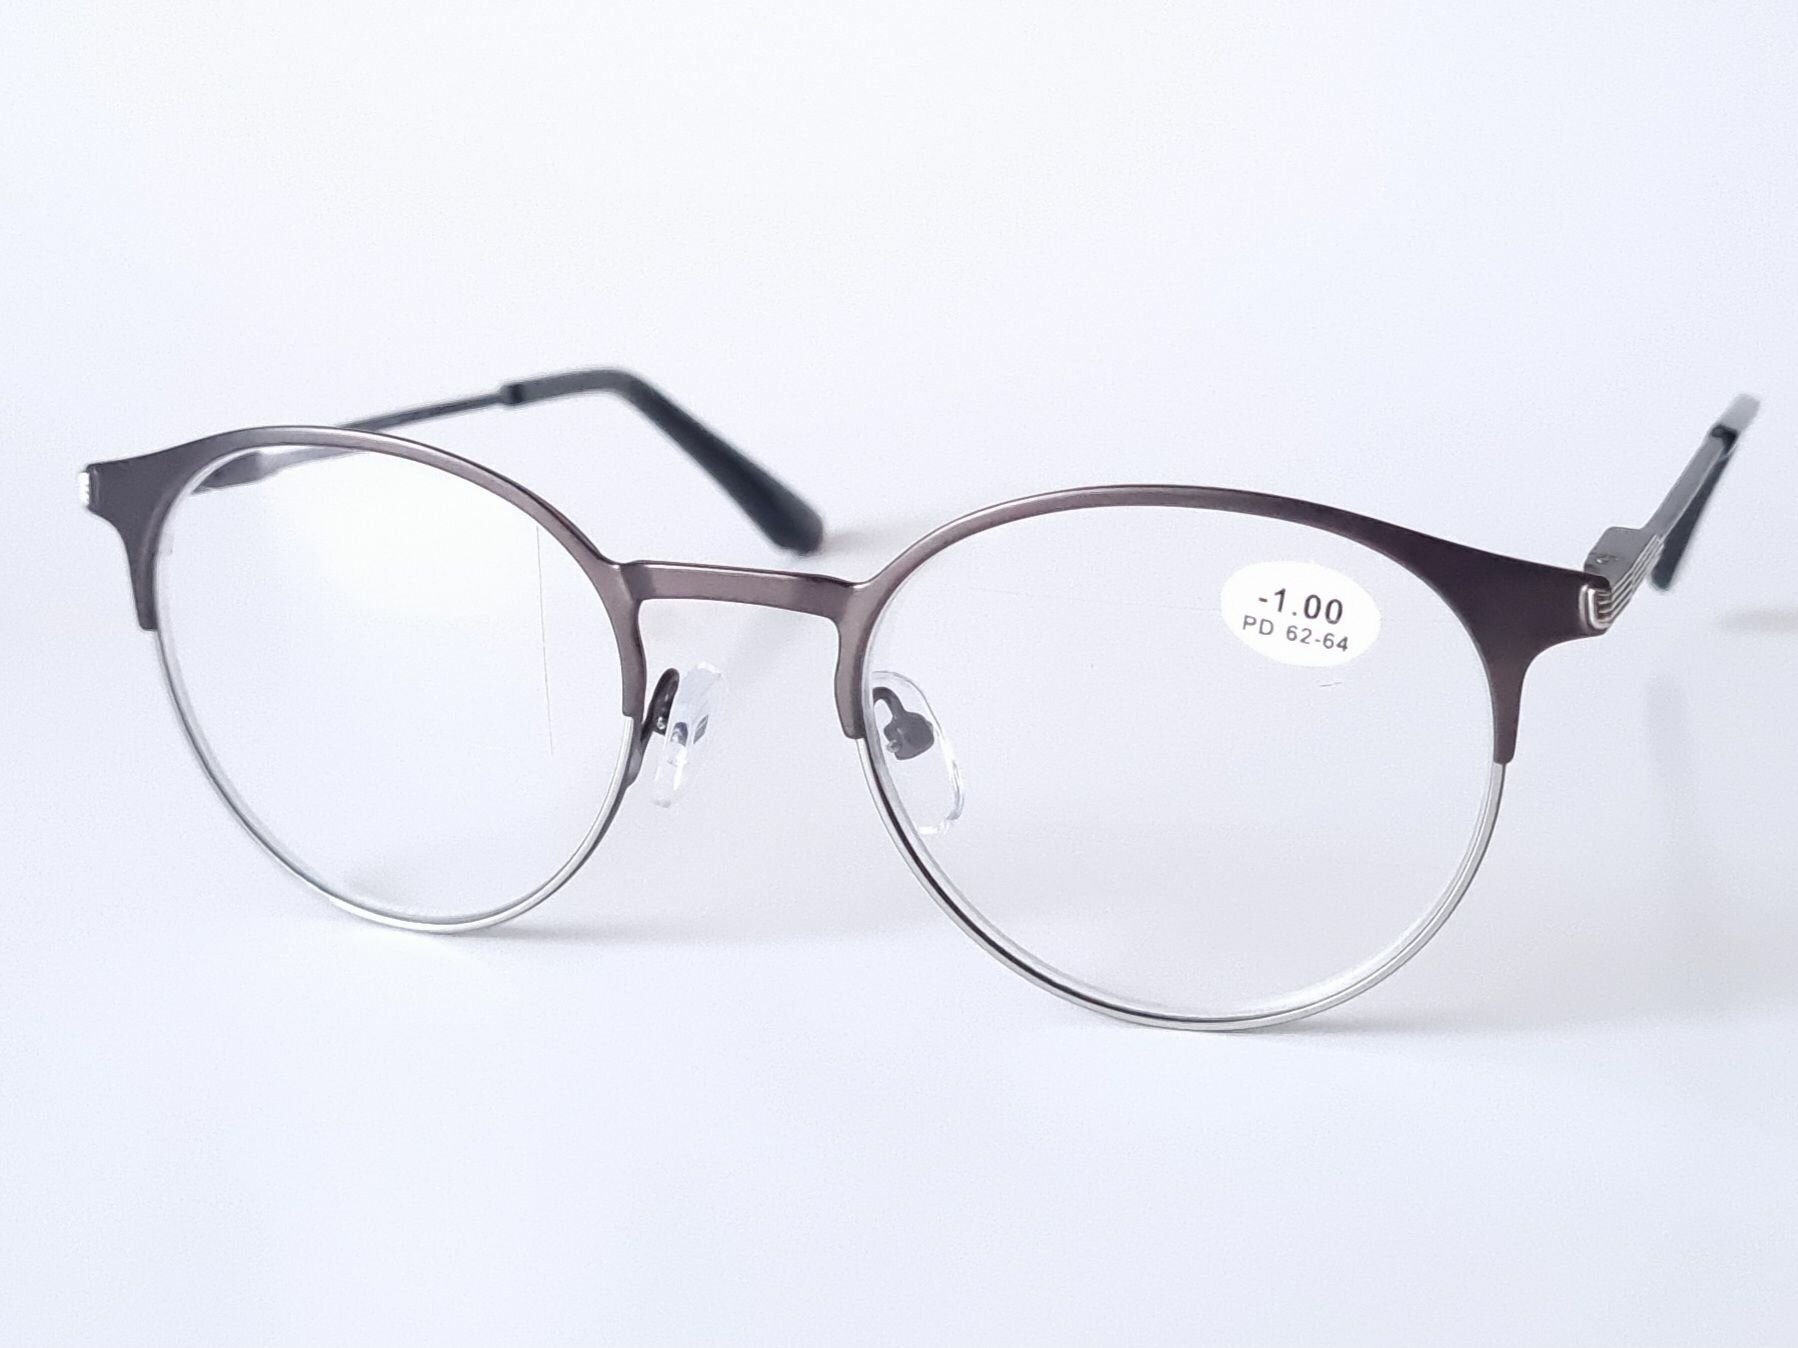 Готовые очки для коррекции зрения Focustoday / круглые готовые очки / женские / мужские очки для коррекции зрения 843 c3-1,75